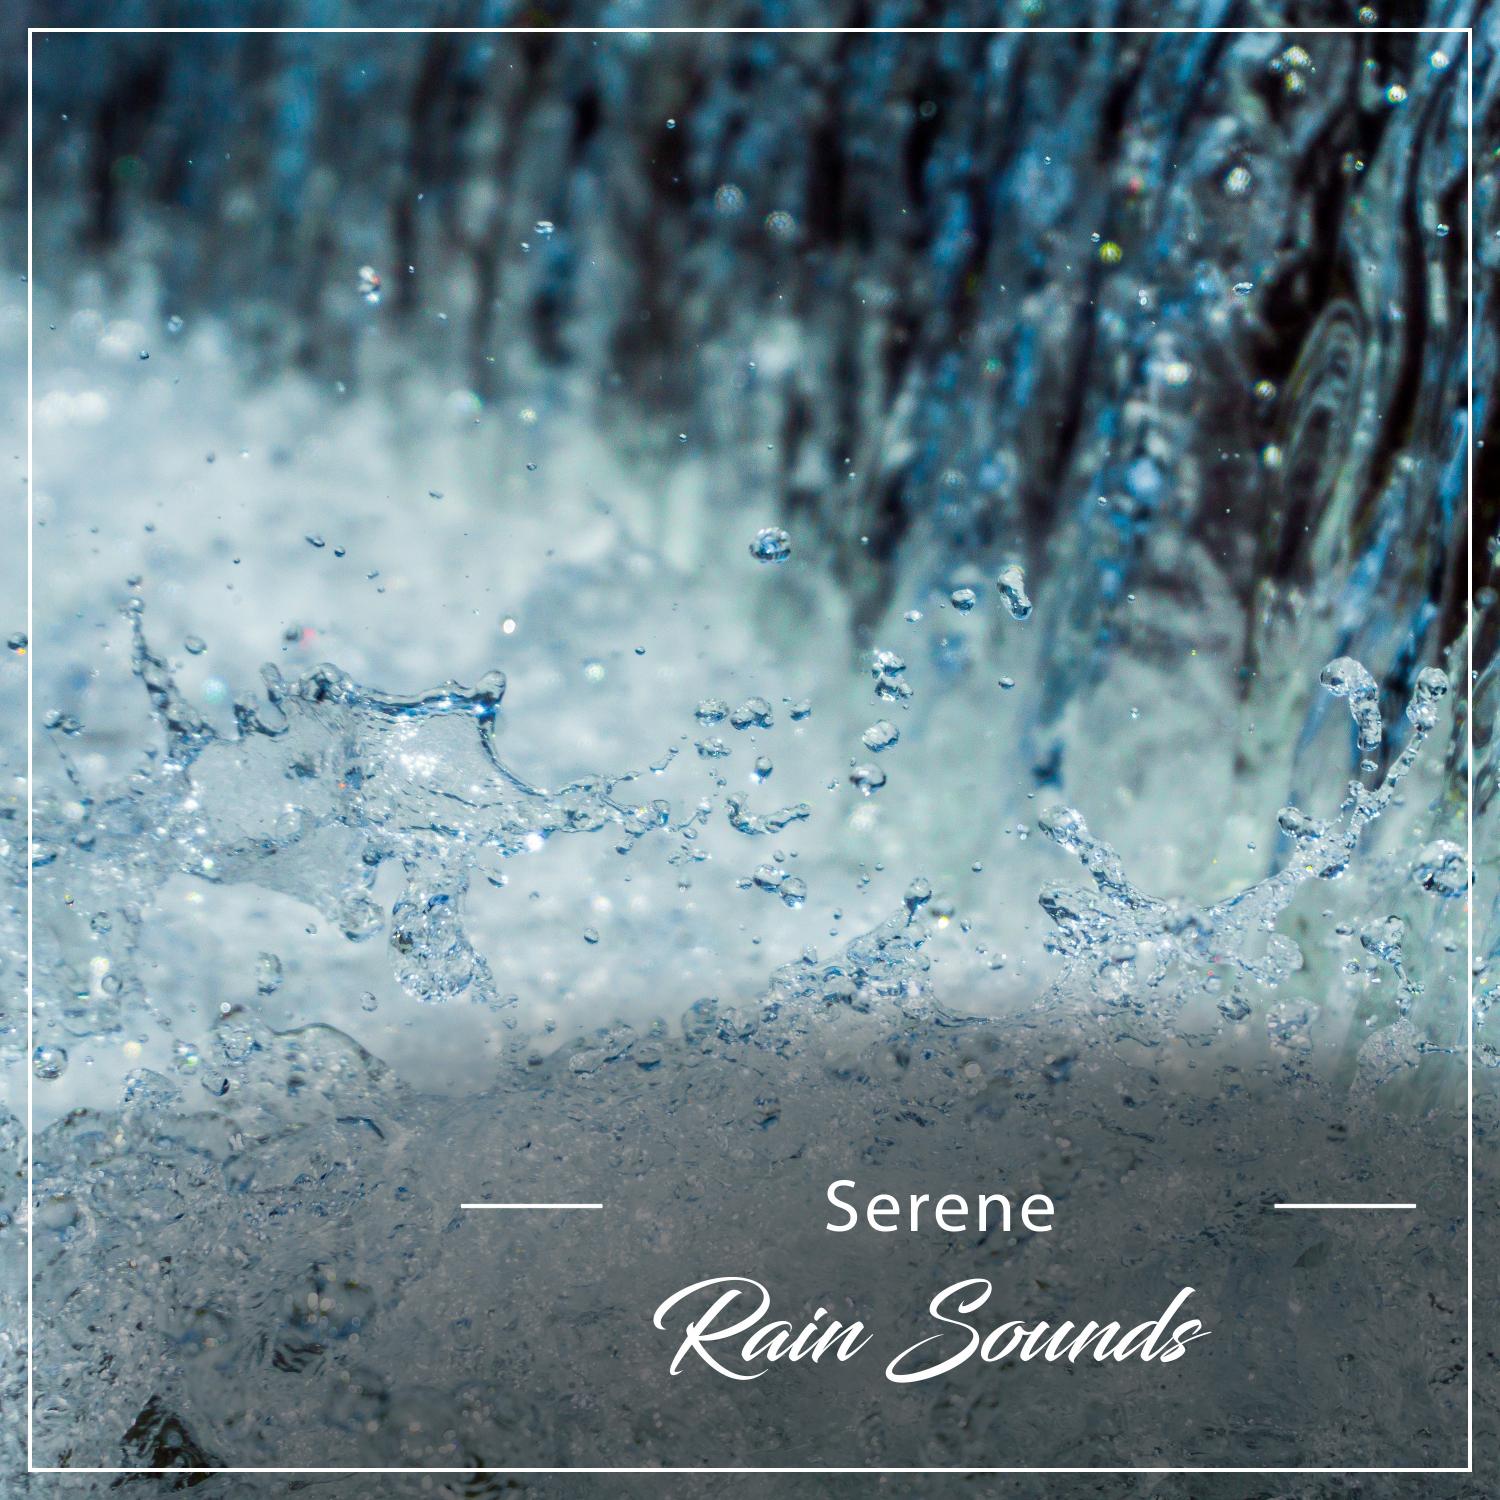 13 Serene Rain Songs for Enhanced Wellness